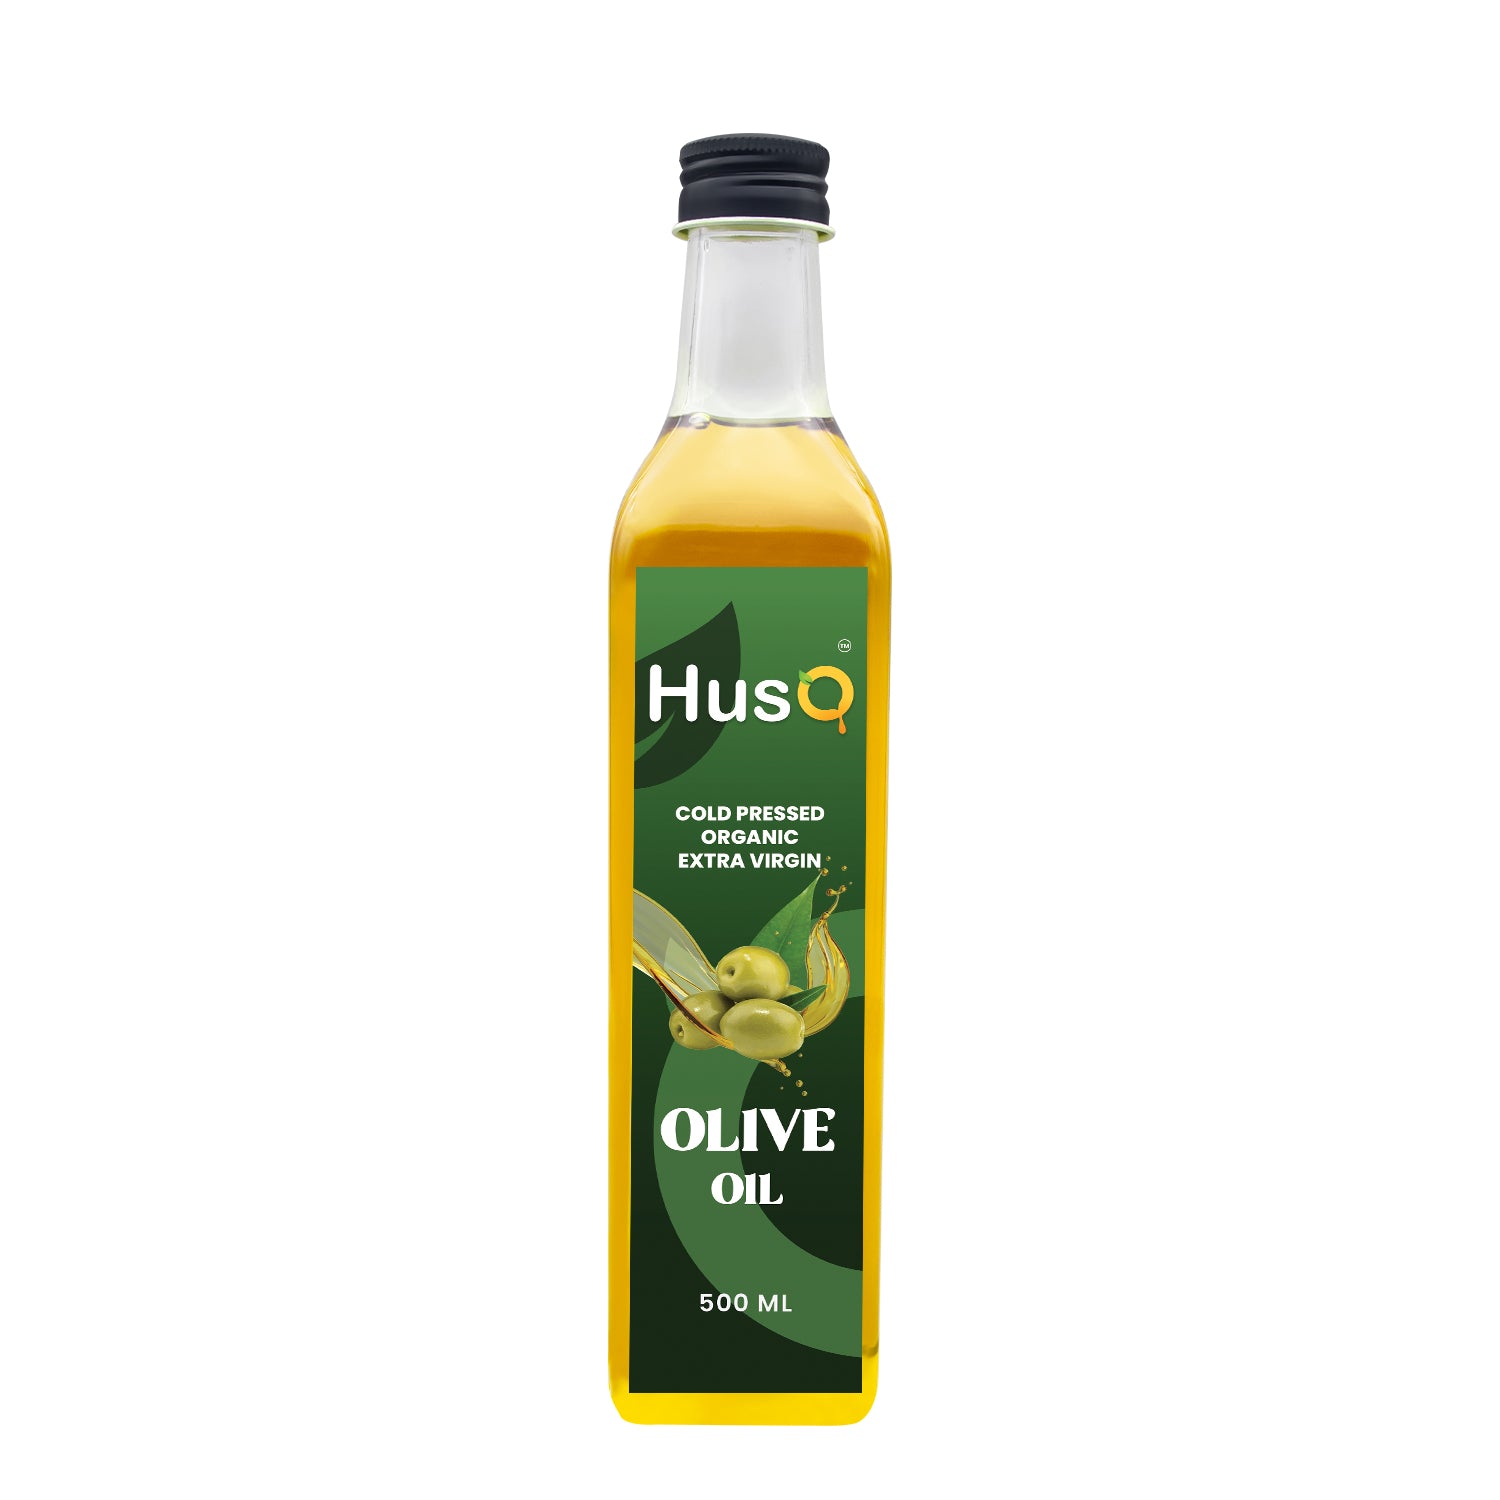 HusQ Olive Oil